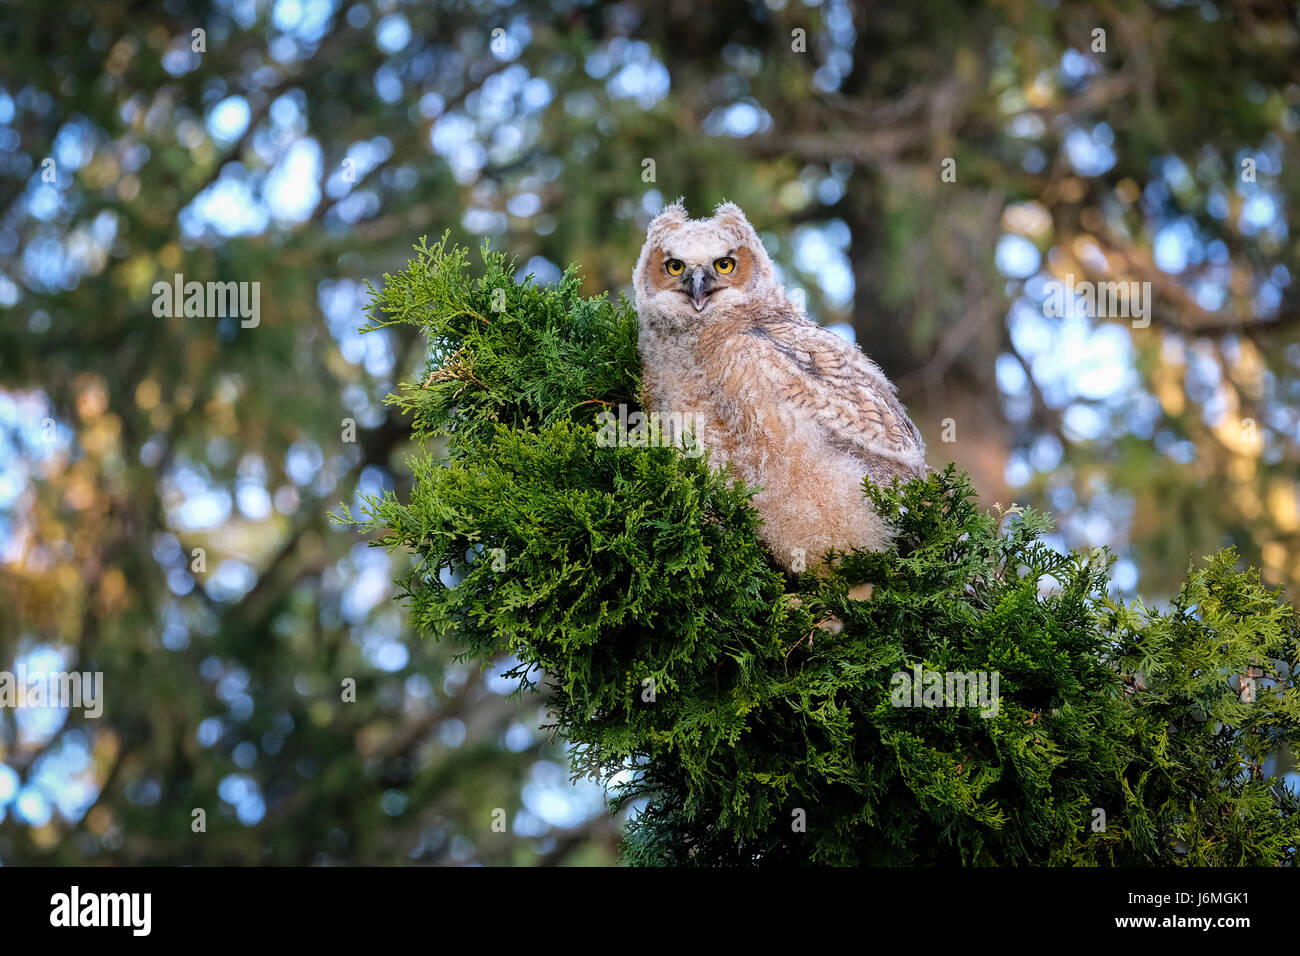 Jeune grand-duc d'Amérique (Bubo virginianus), de l'Est, owl Owl Hoot, perché sur une branche, regardant la caméra, London, Ontario, Canada. Banque D'Images